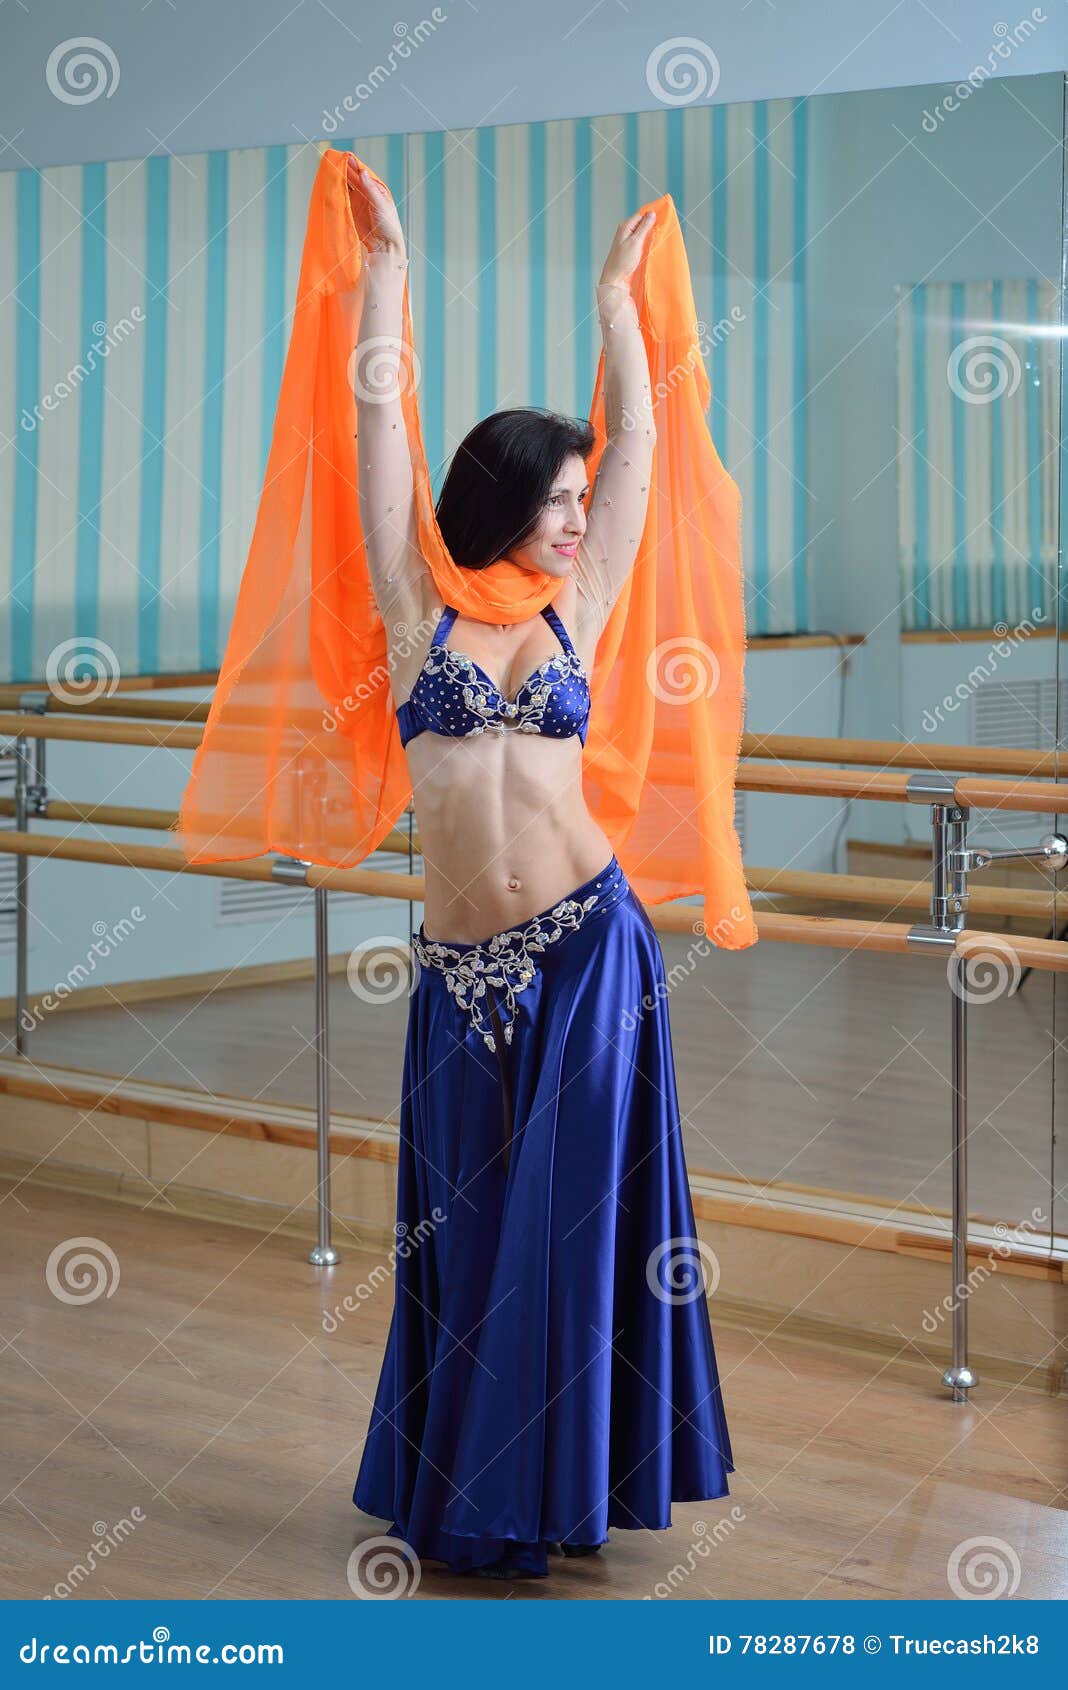 Baile Hermoso De La Mujer En Danza árabe Del Traje, De O De Vientre Foto de archivo - Imagen de bailando, 78287678